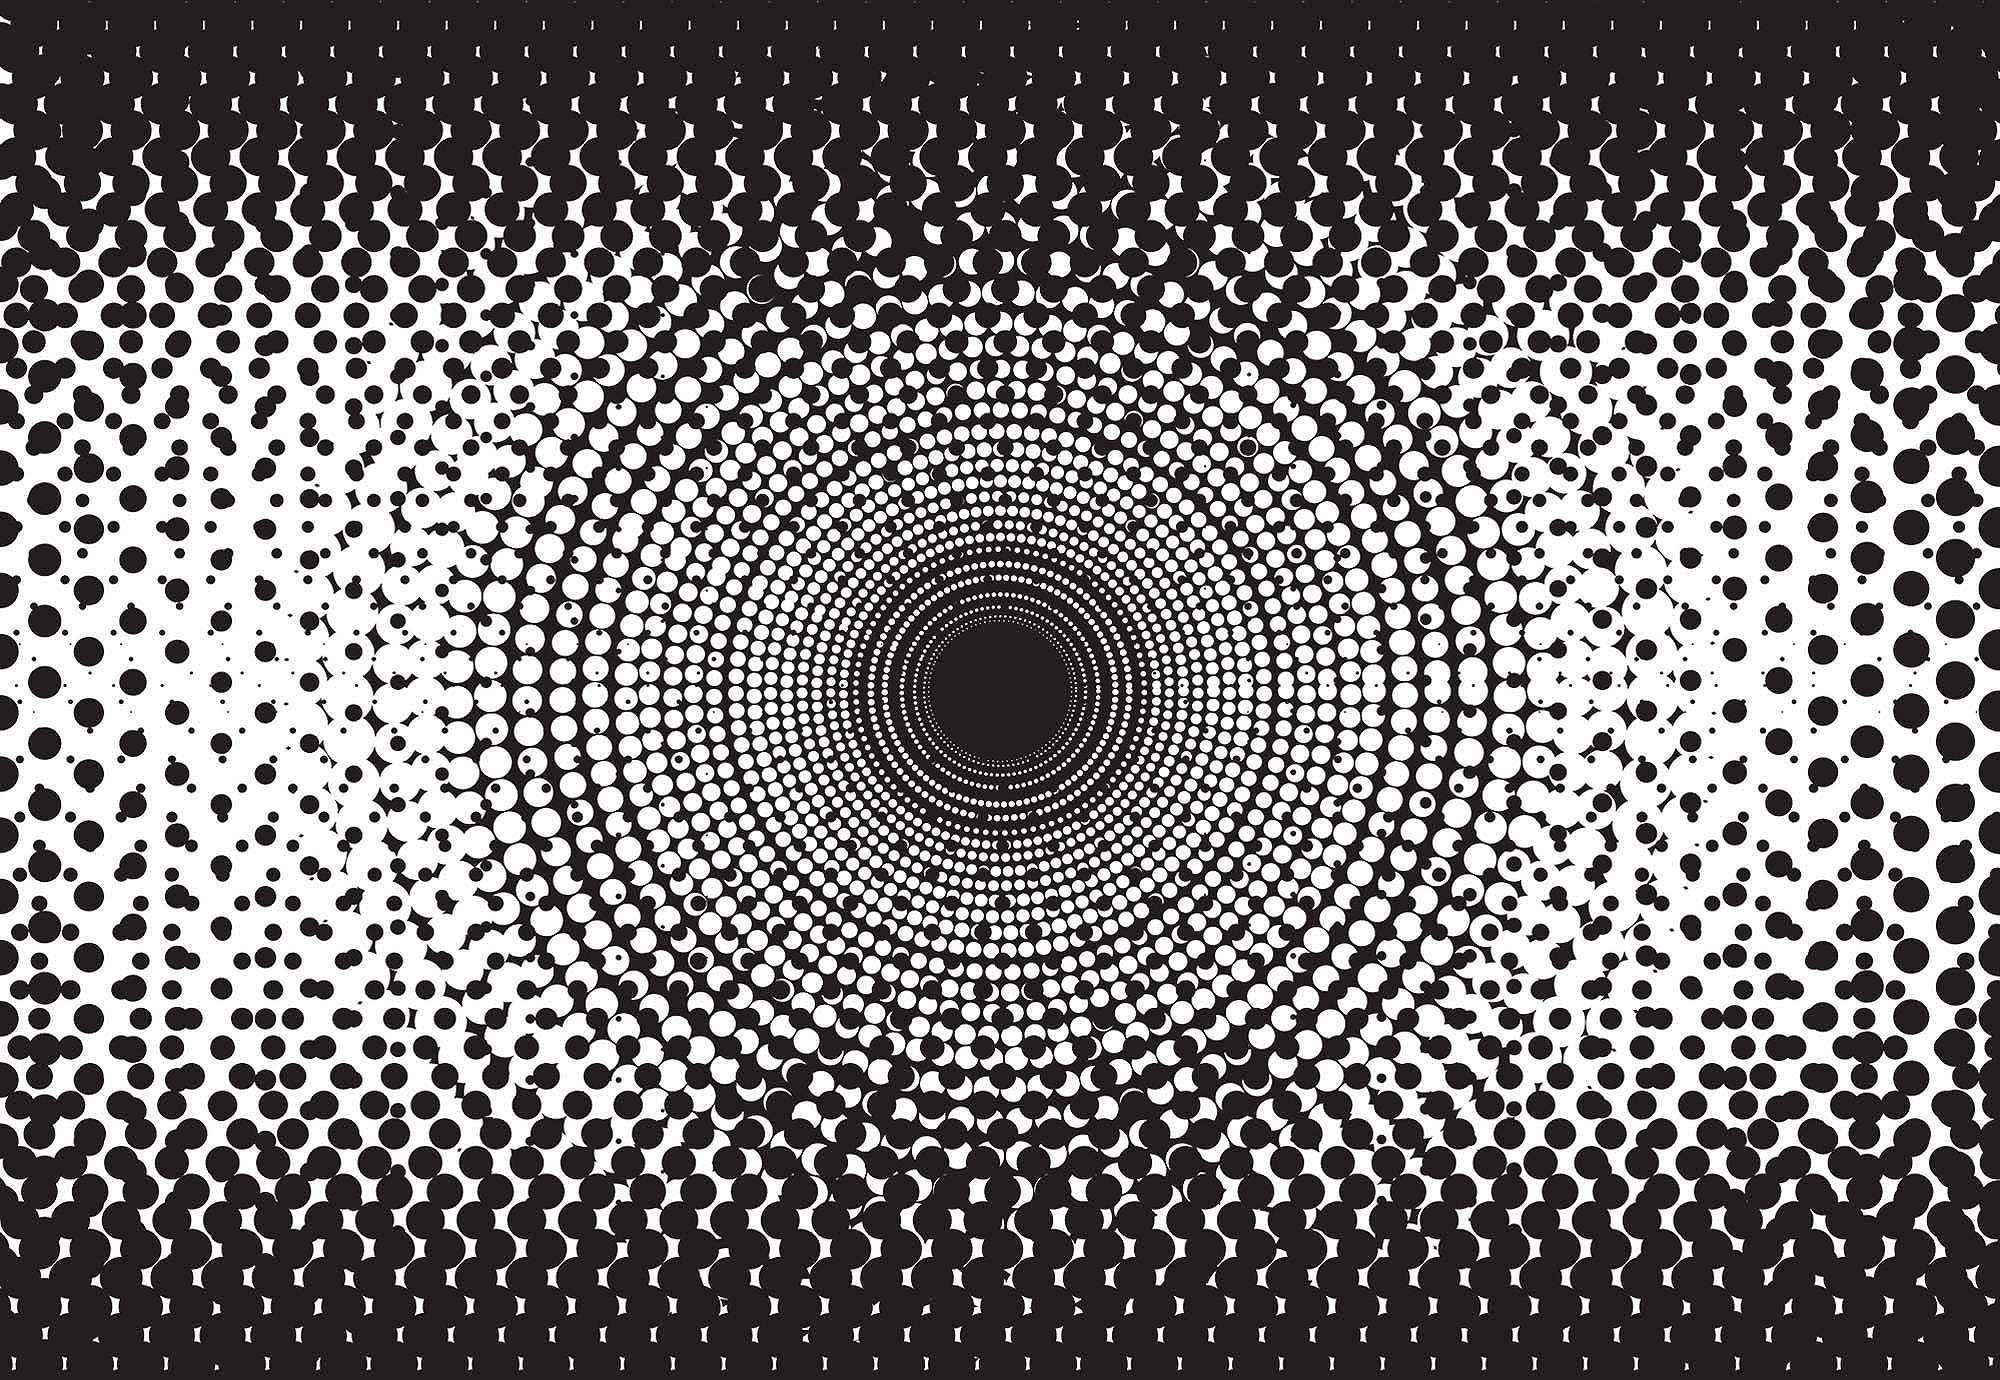 Fali poszter modern minimalista fekete-fehér színvilágban, kör mintával 368x254 vlies